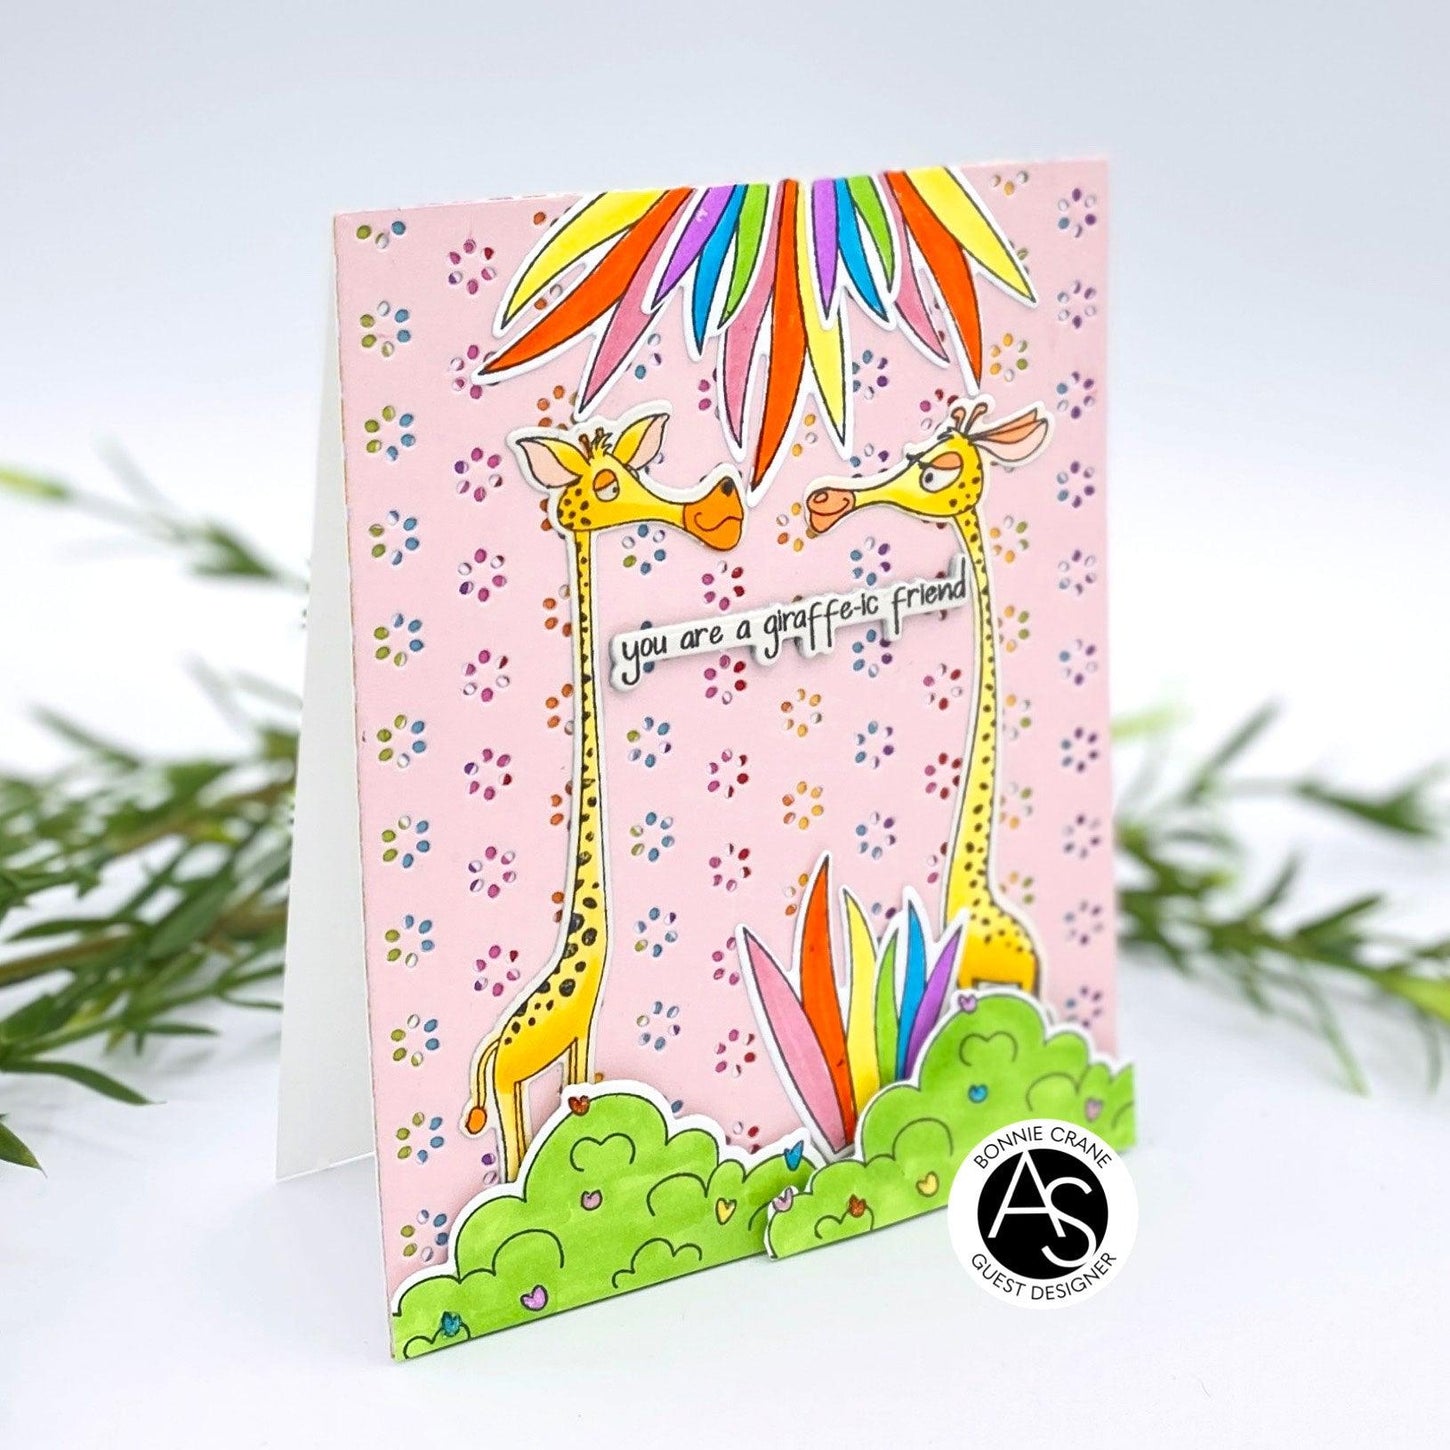 Alex-syberia-designs-giraffe-stamp-dies-love-valentines-friend-cardmaking-handmadecards-scrapbook-shop-tutorial-cardmakers-karten-design